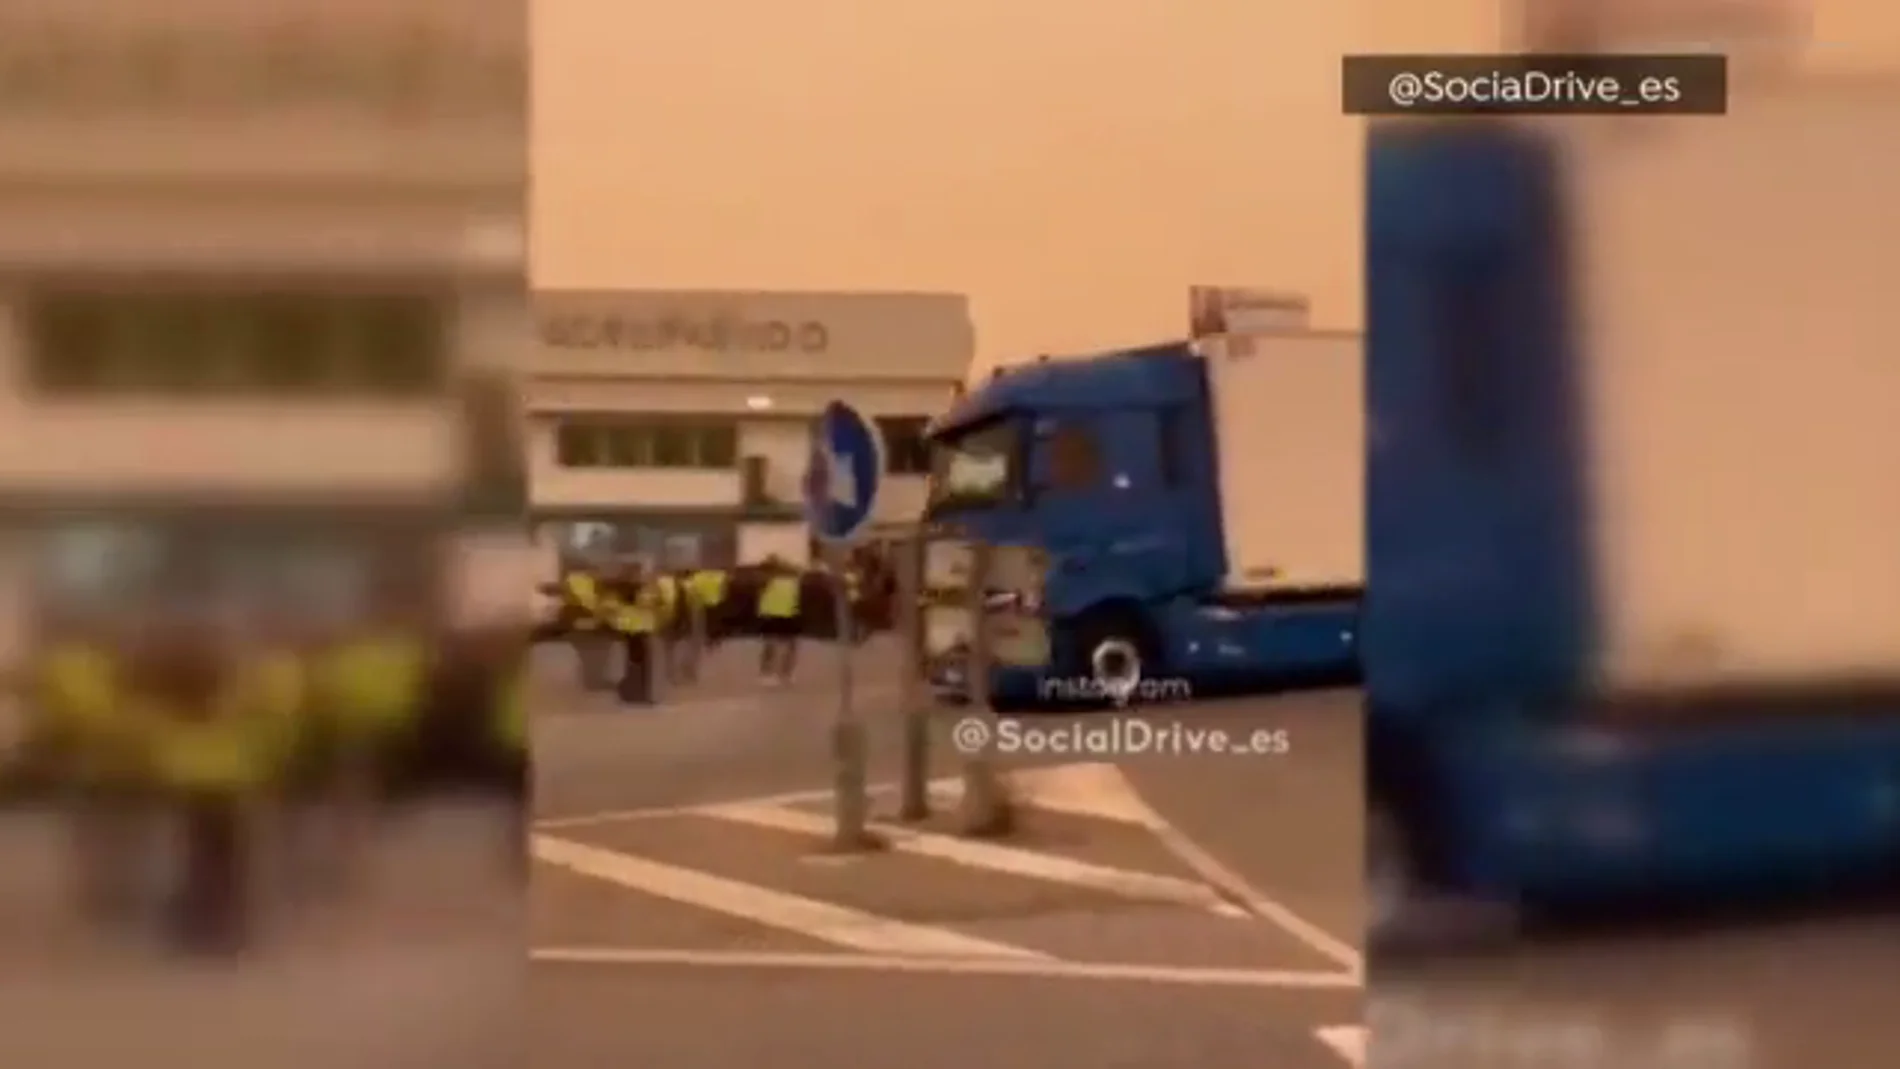 Tensión por la huelga de transporte en El Ejido, donde un camión casi atropella a varios piquetes